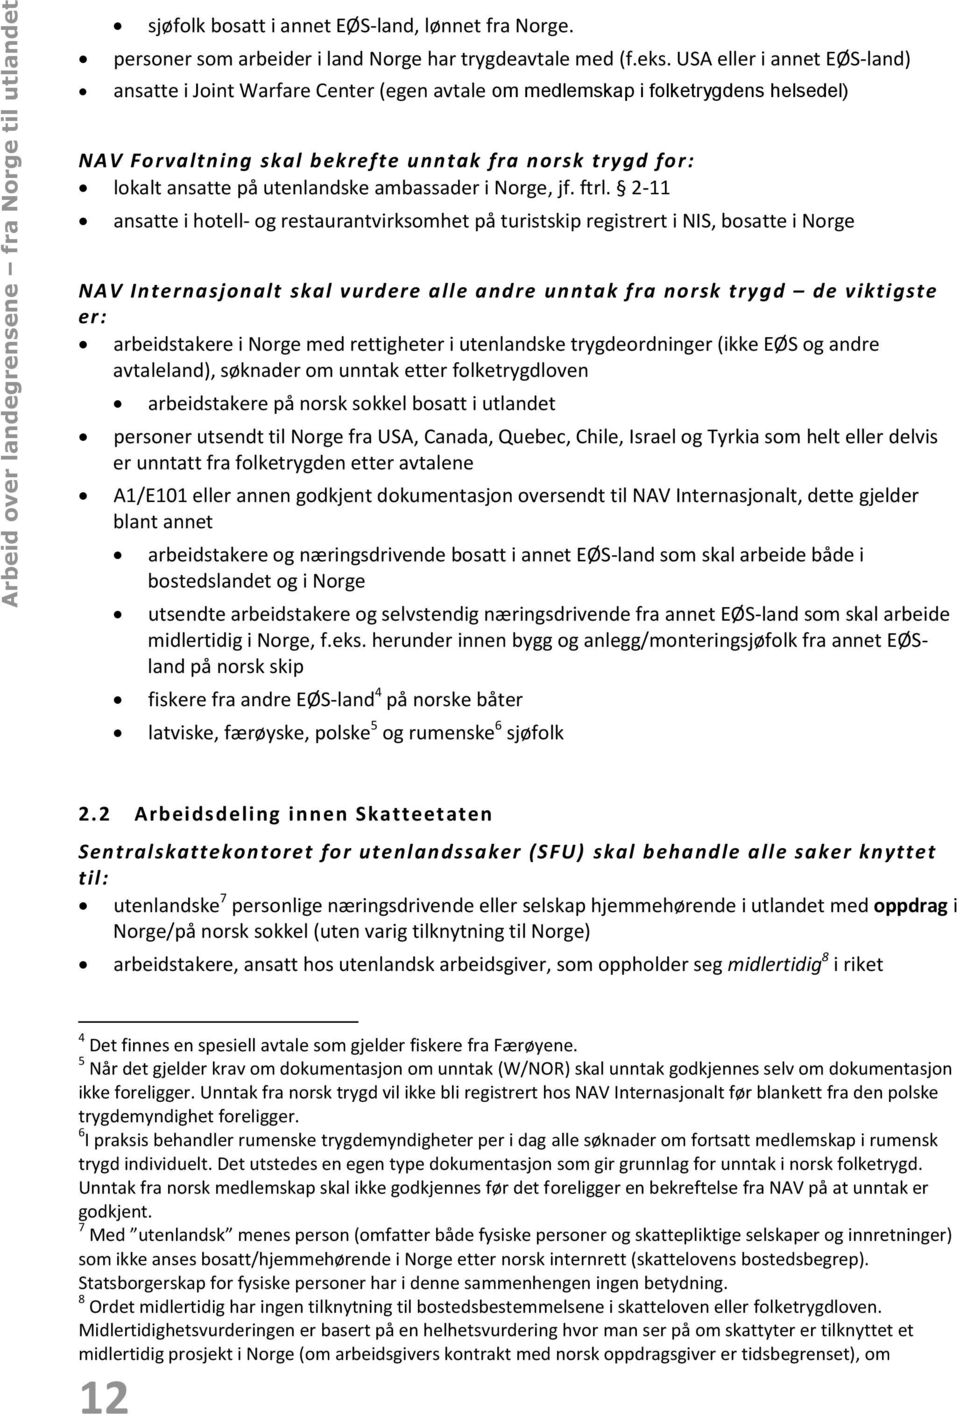 Rutiner mv. Samhandling på utlandsområdet - PDF Gratis nedlasting